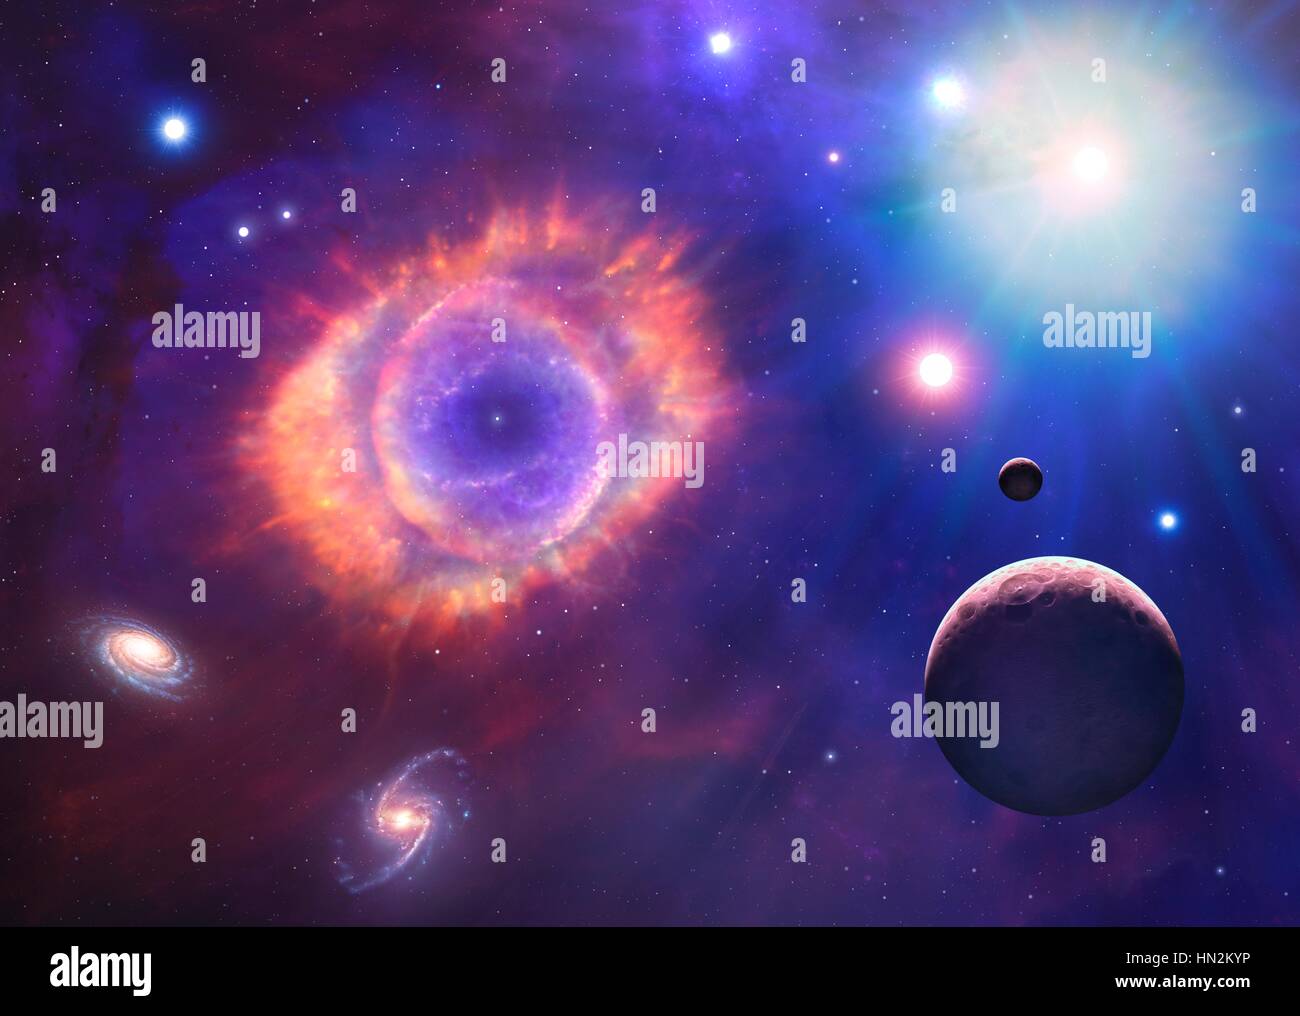 Il s'agit d'une illustration conceptuelle représentant l'espace et l'astronomie en général. Il montre les différents objets qui peuvent être trouvés dans l'Univers : les planètes, lunes, étoiles, nébuleuses et galaxies. L'élément central est une nébuleuse planétaire le cast-off reste d'une étoile mourante. Banque D'Images